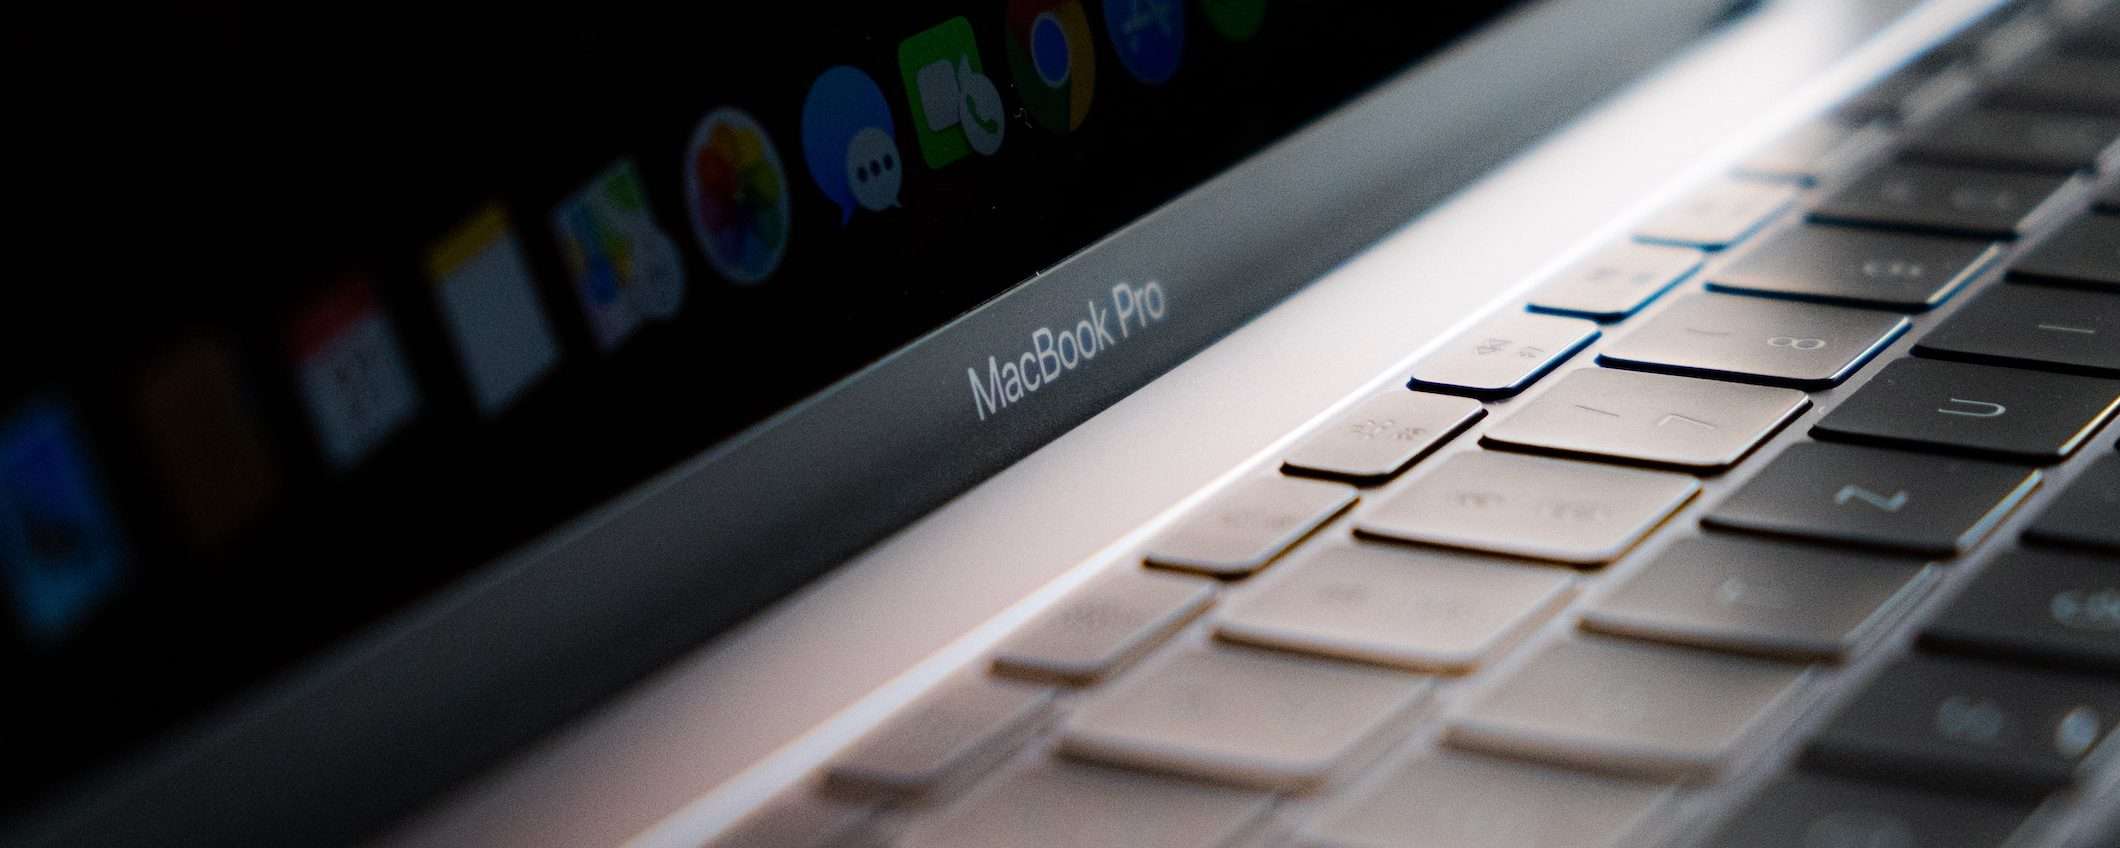 MacBook Pro con M2 Pro e Max all'inizio del 2023?